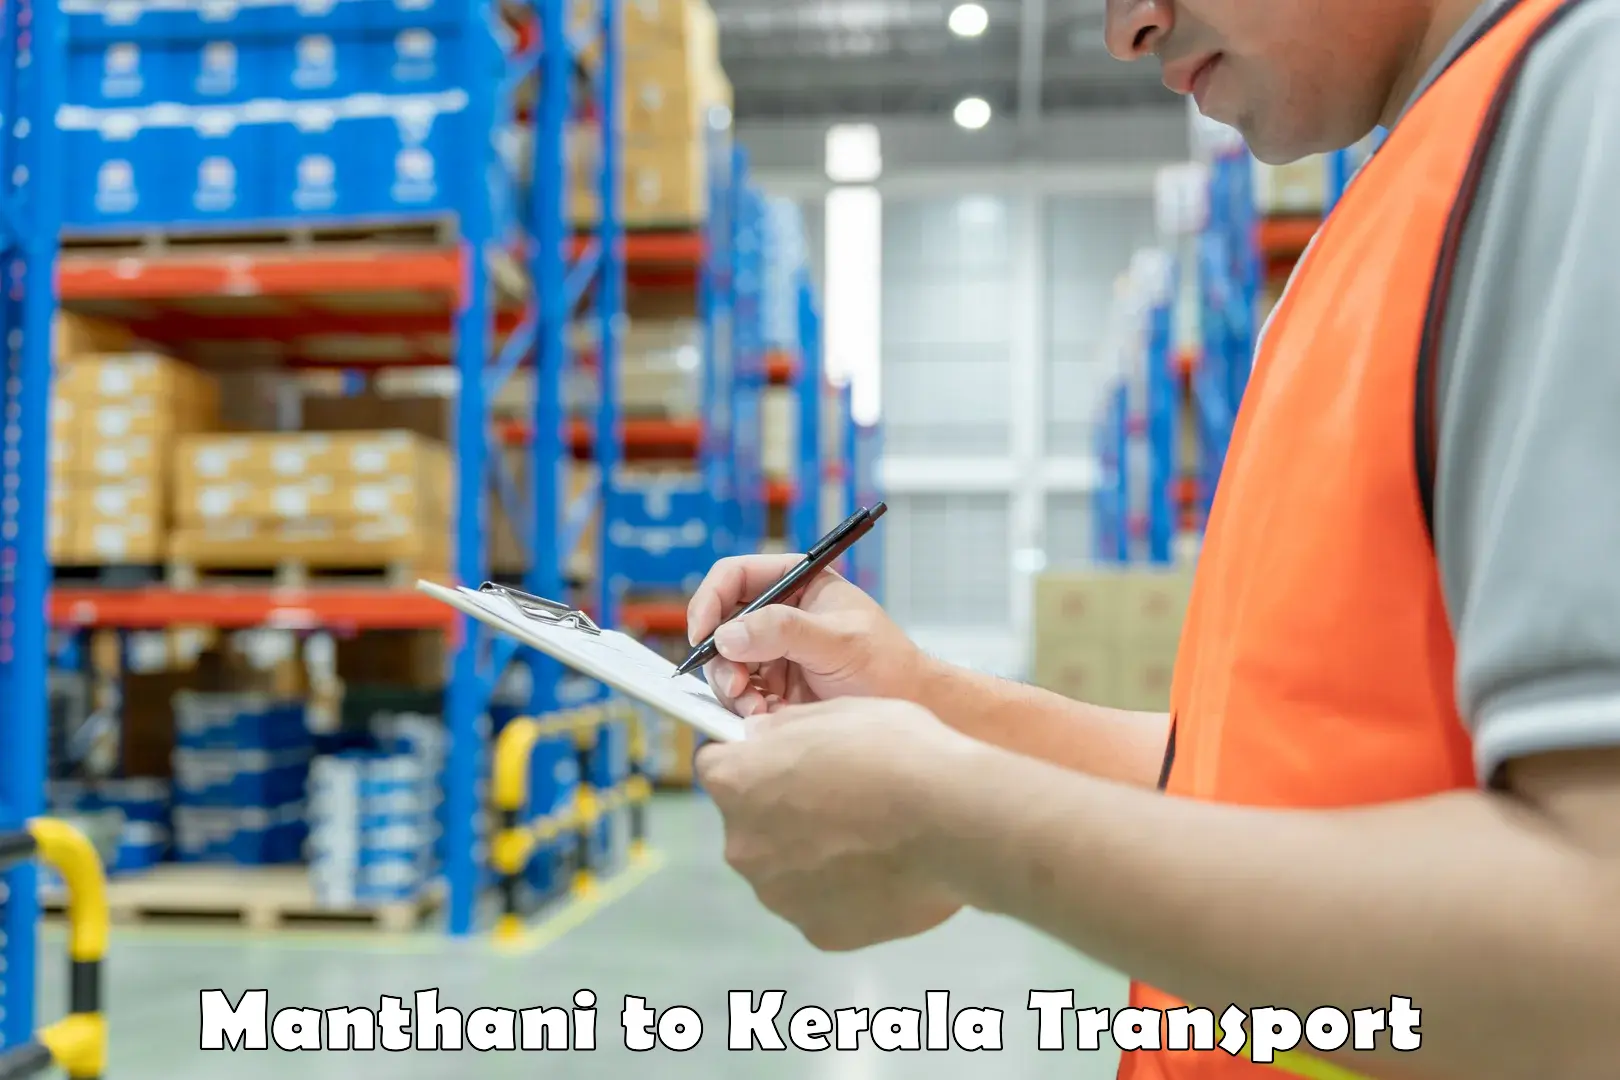 Furniture transport service Manthani to Manjeshwar